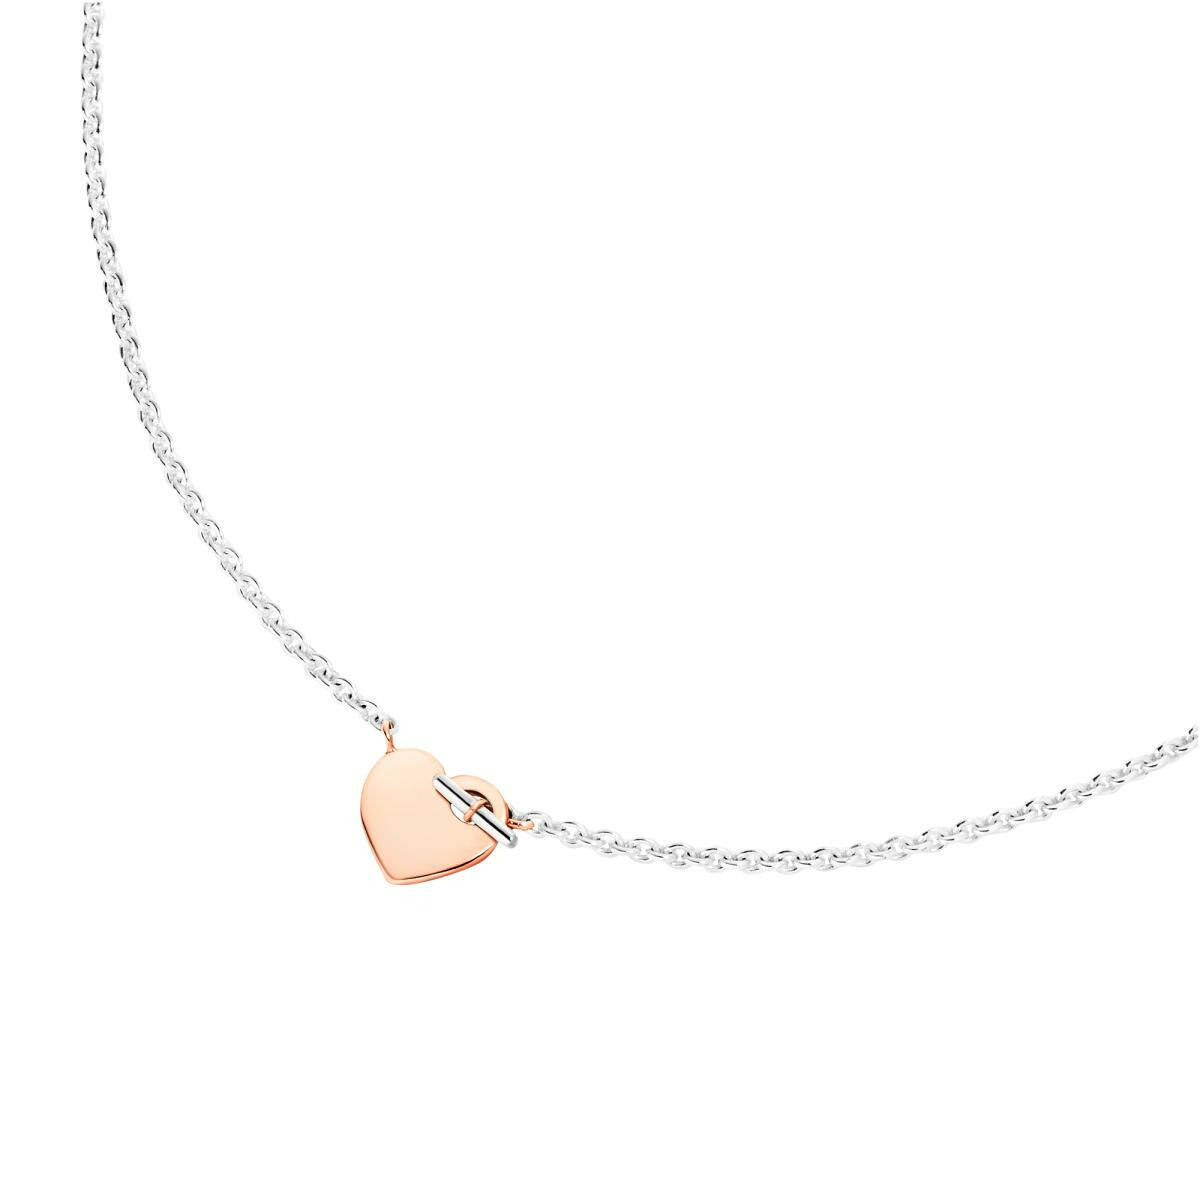 Halskette Herz T-Bar von DoDo online kaufen (Ref. DCC4002-HEART-0009A)